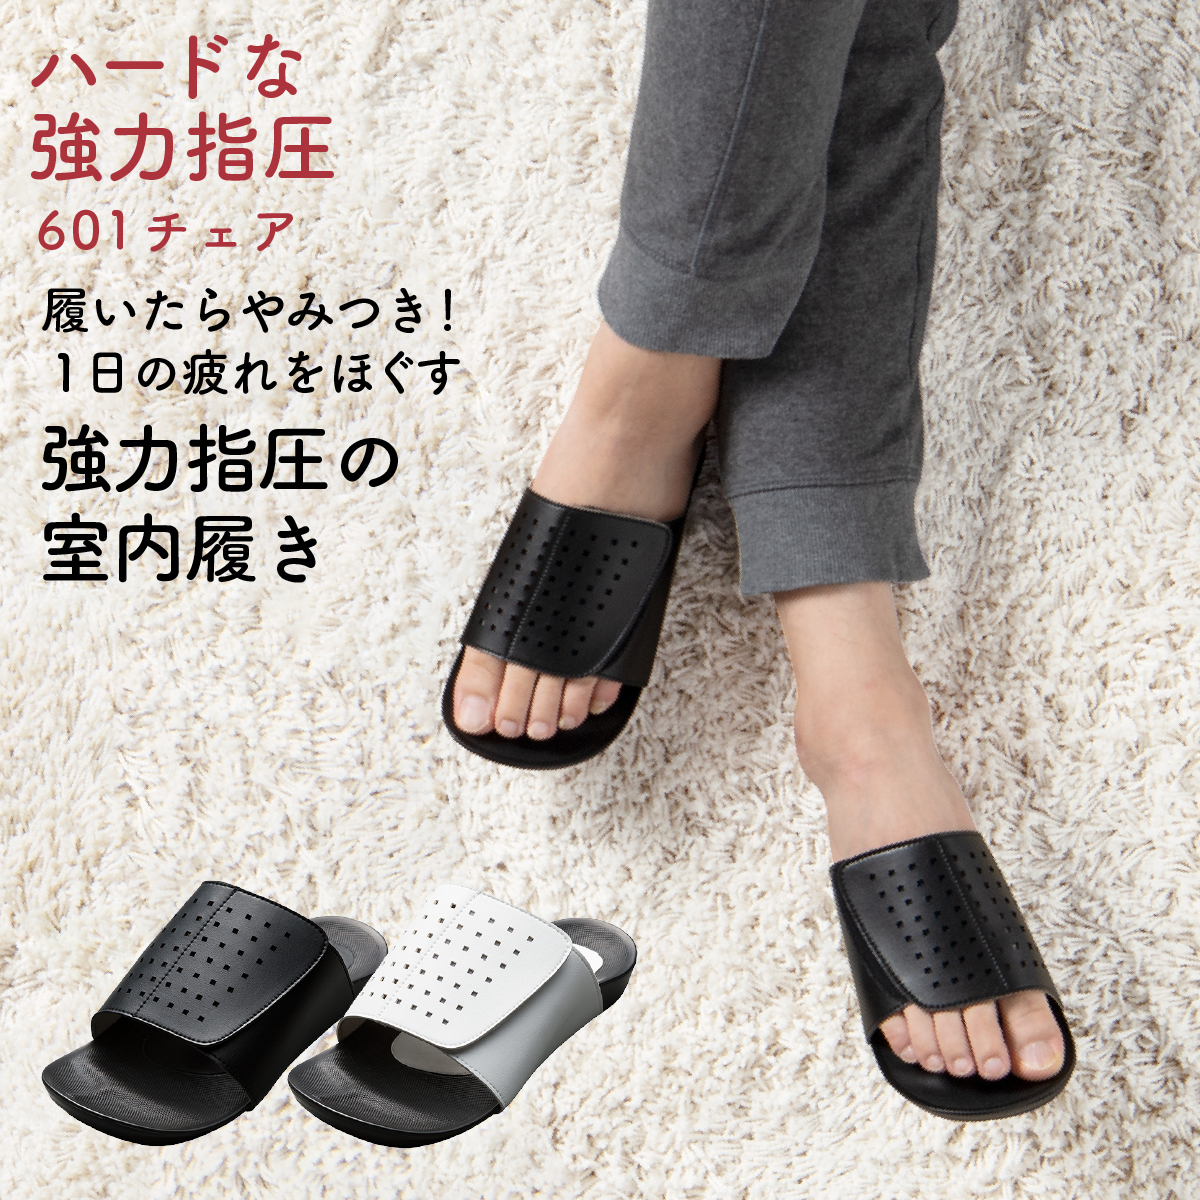 見事な : ＡＫＡＩＳＨＩ Akaishi ブーティL fitter ブーツ 楽天市場 